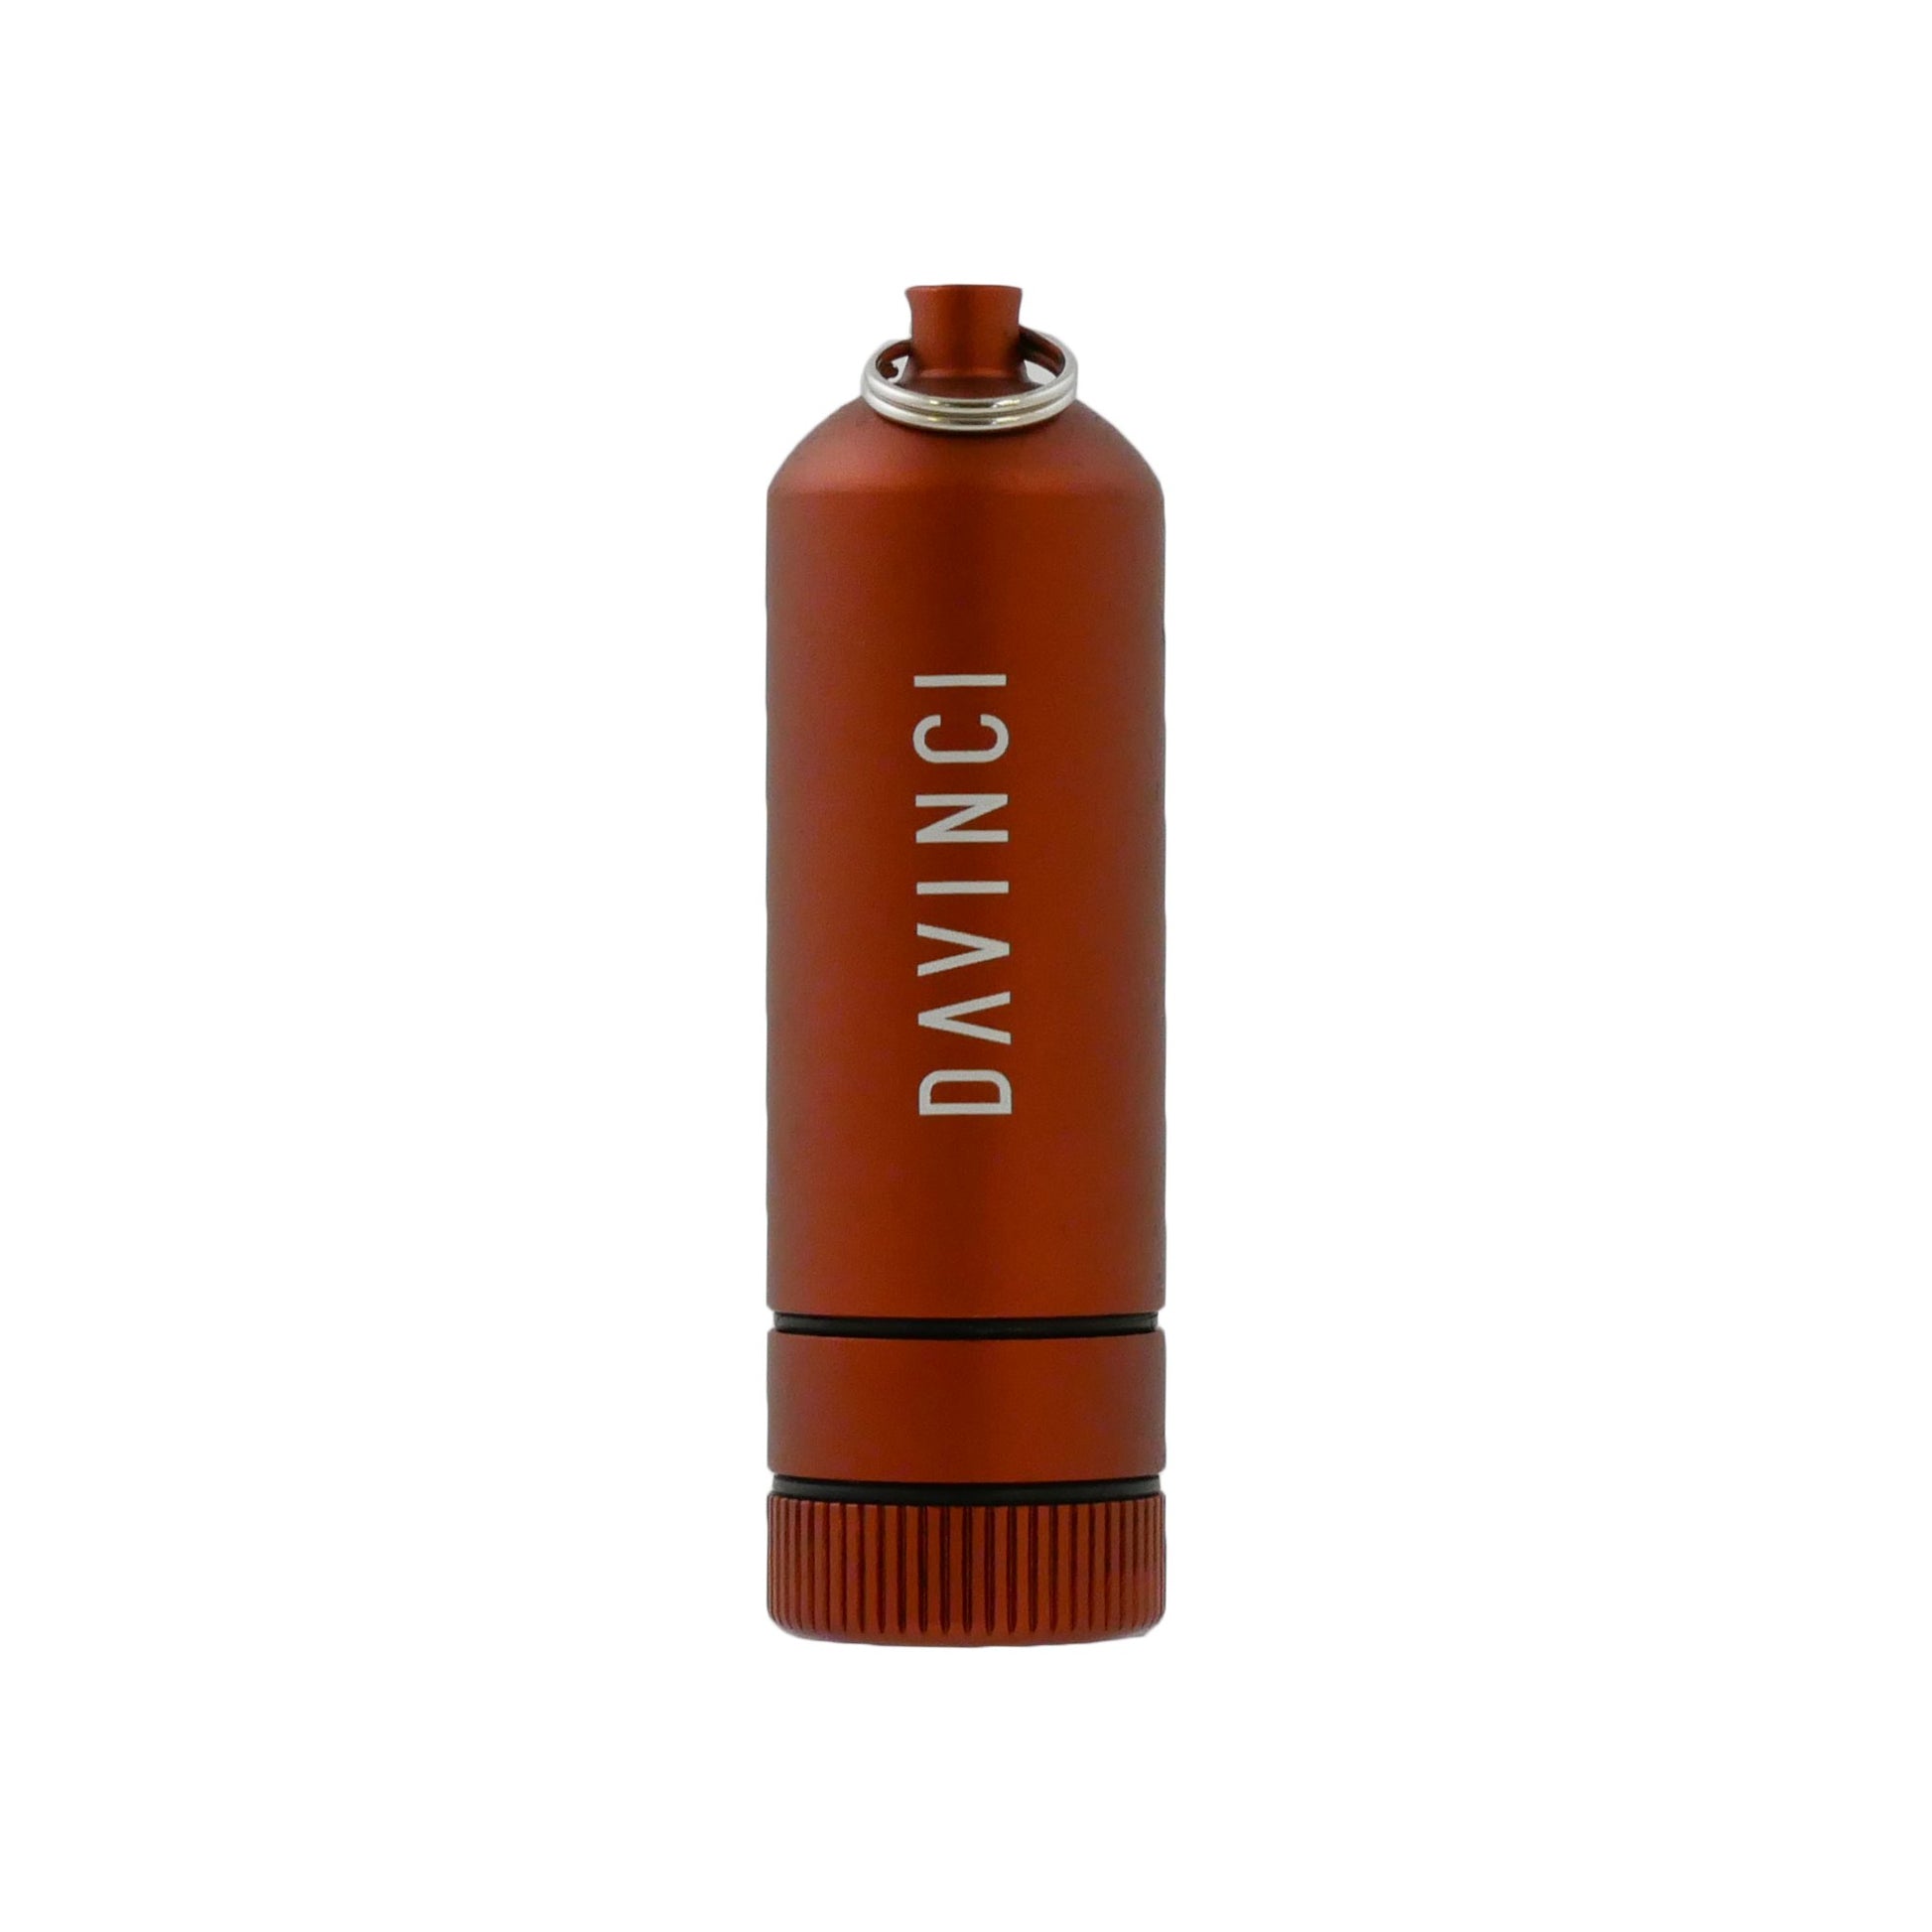 MIQRO Carrying Can XL Vaporizers da vinci Rust (Red) 